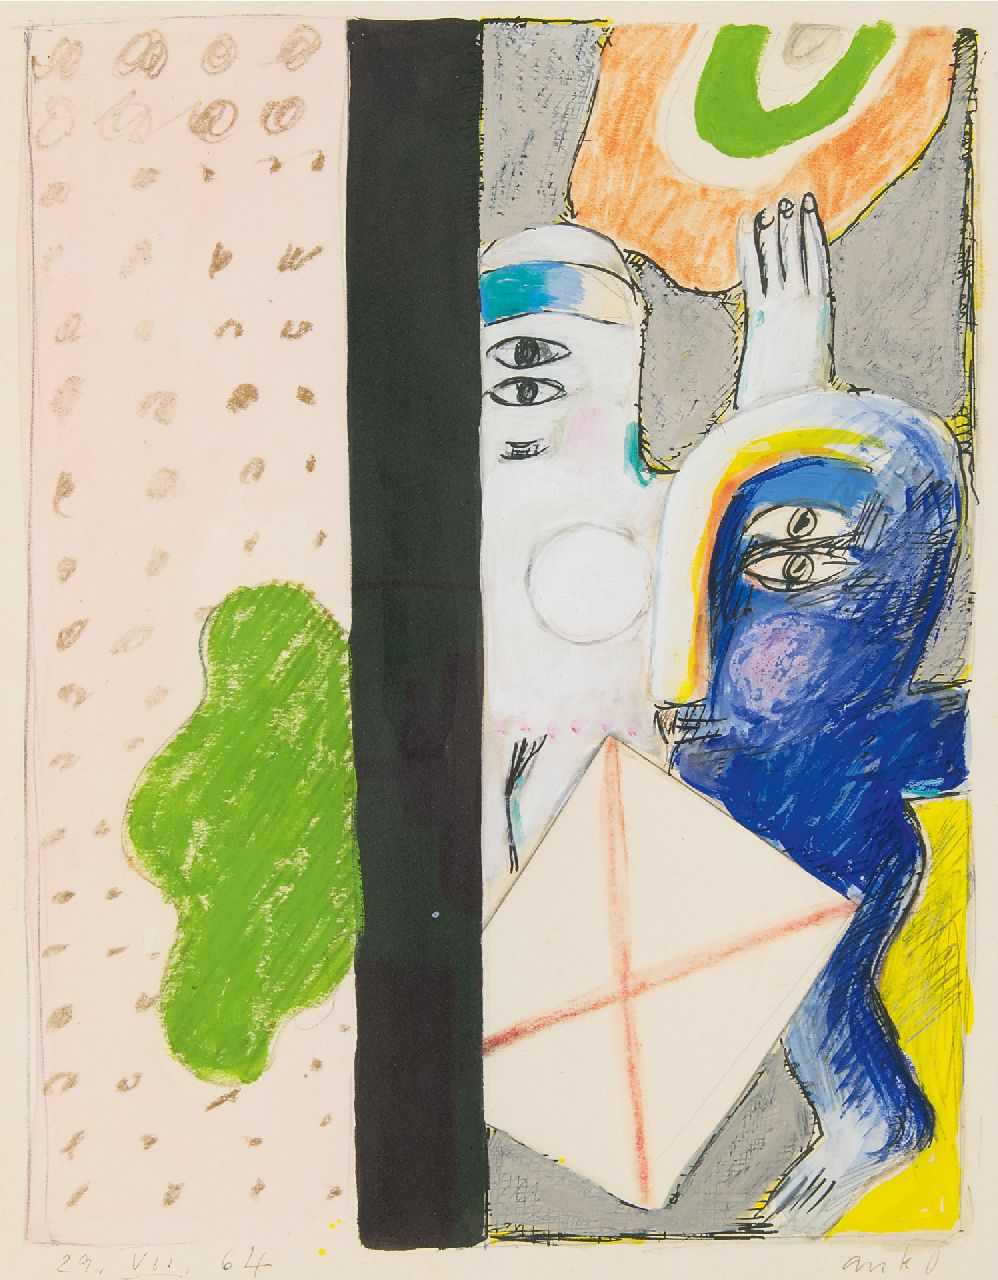 Horst Antes | Paar in interieur, potlood, krijt, inkt en gouache op papier, 36,4 x 30,0 cm, gesigneerd r.o. en gedateerd 29.VII.64